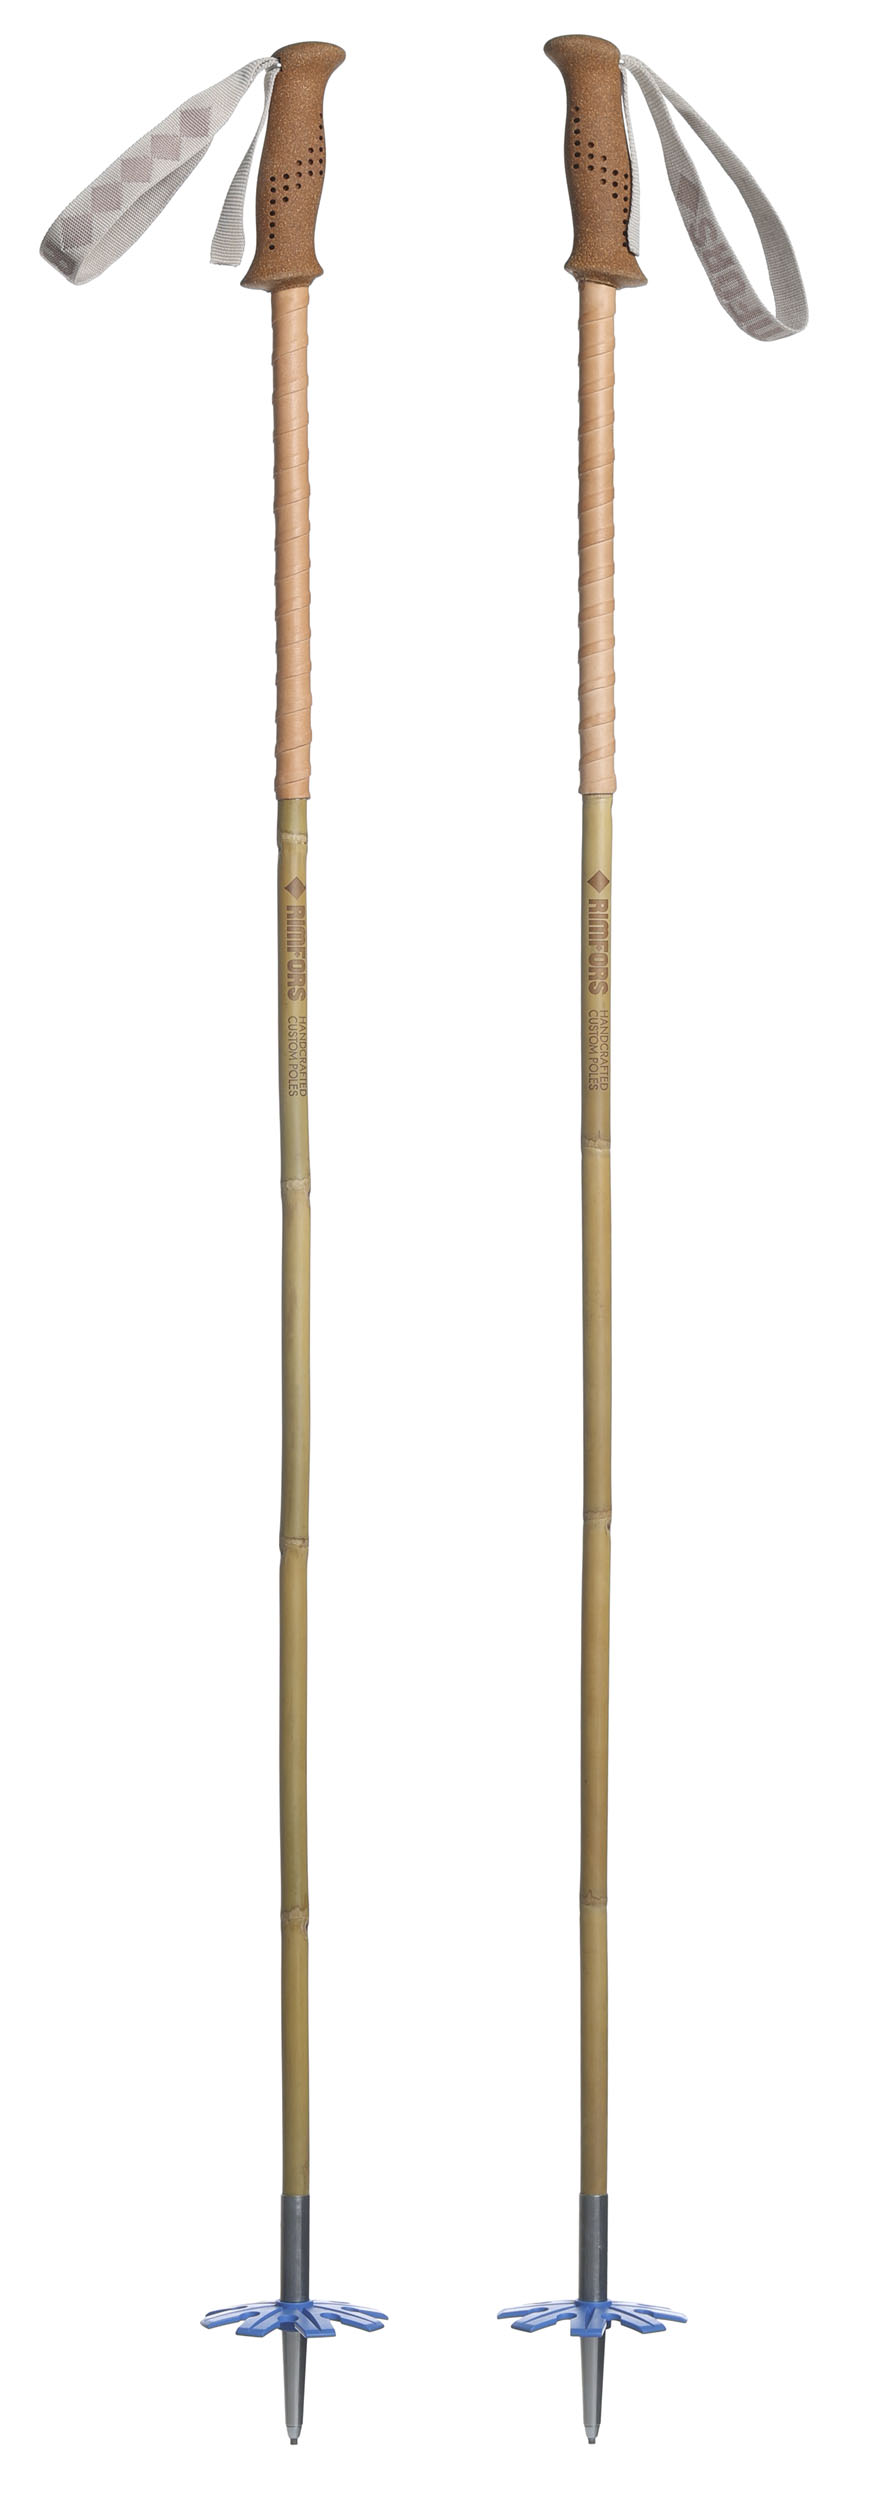 Bambustavar med förlängt grepp av renskinn, handtag av kork och blå trugor (100 mm).